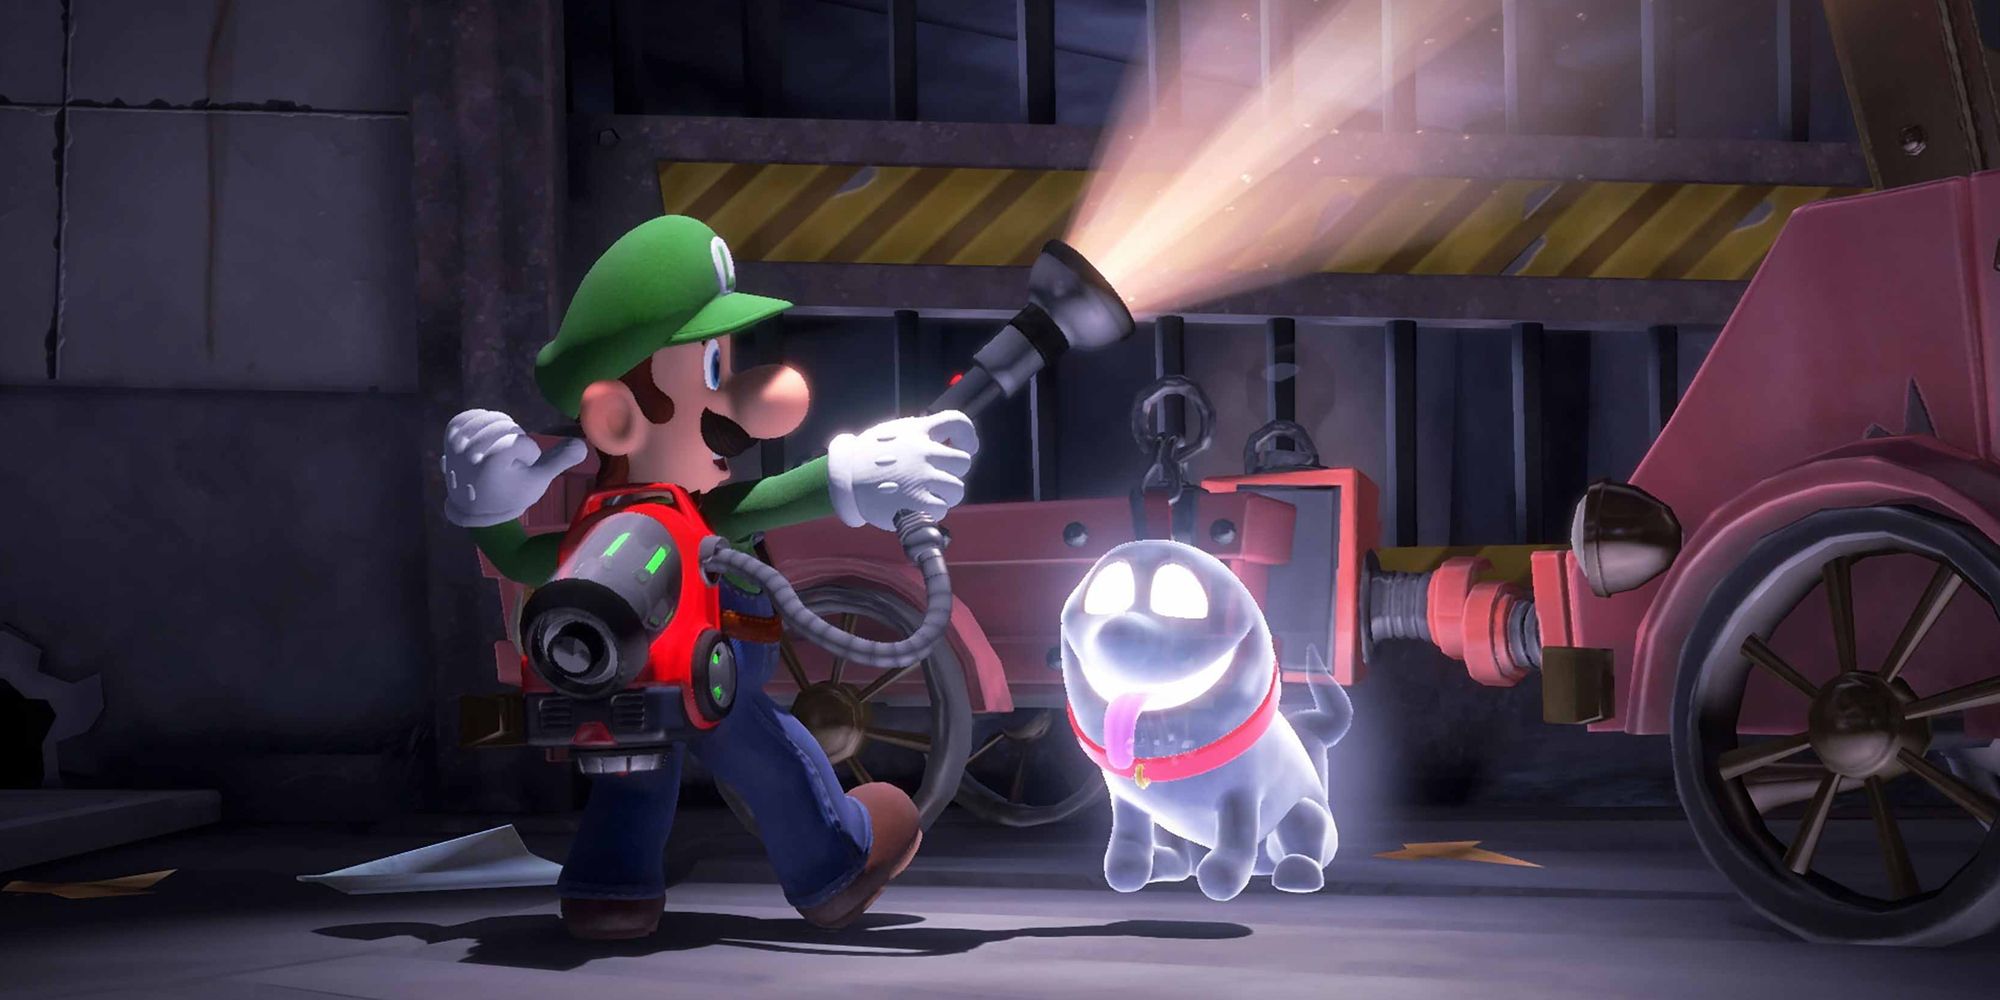 Luigi's Mansion 3 DLC part 2 is live